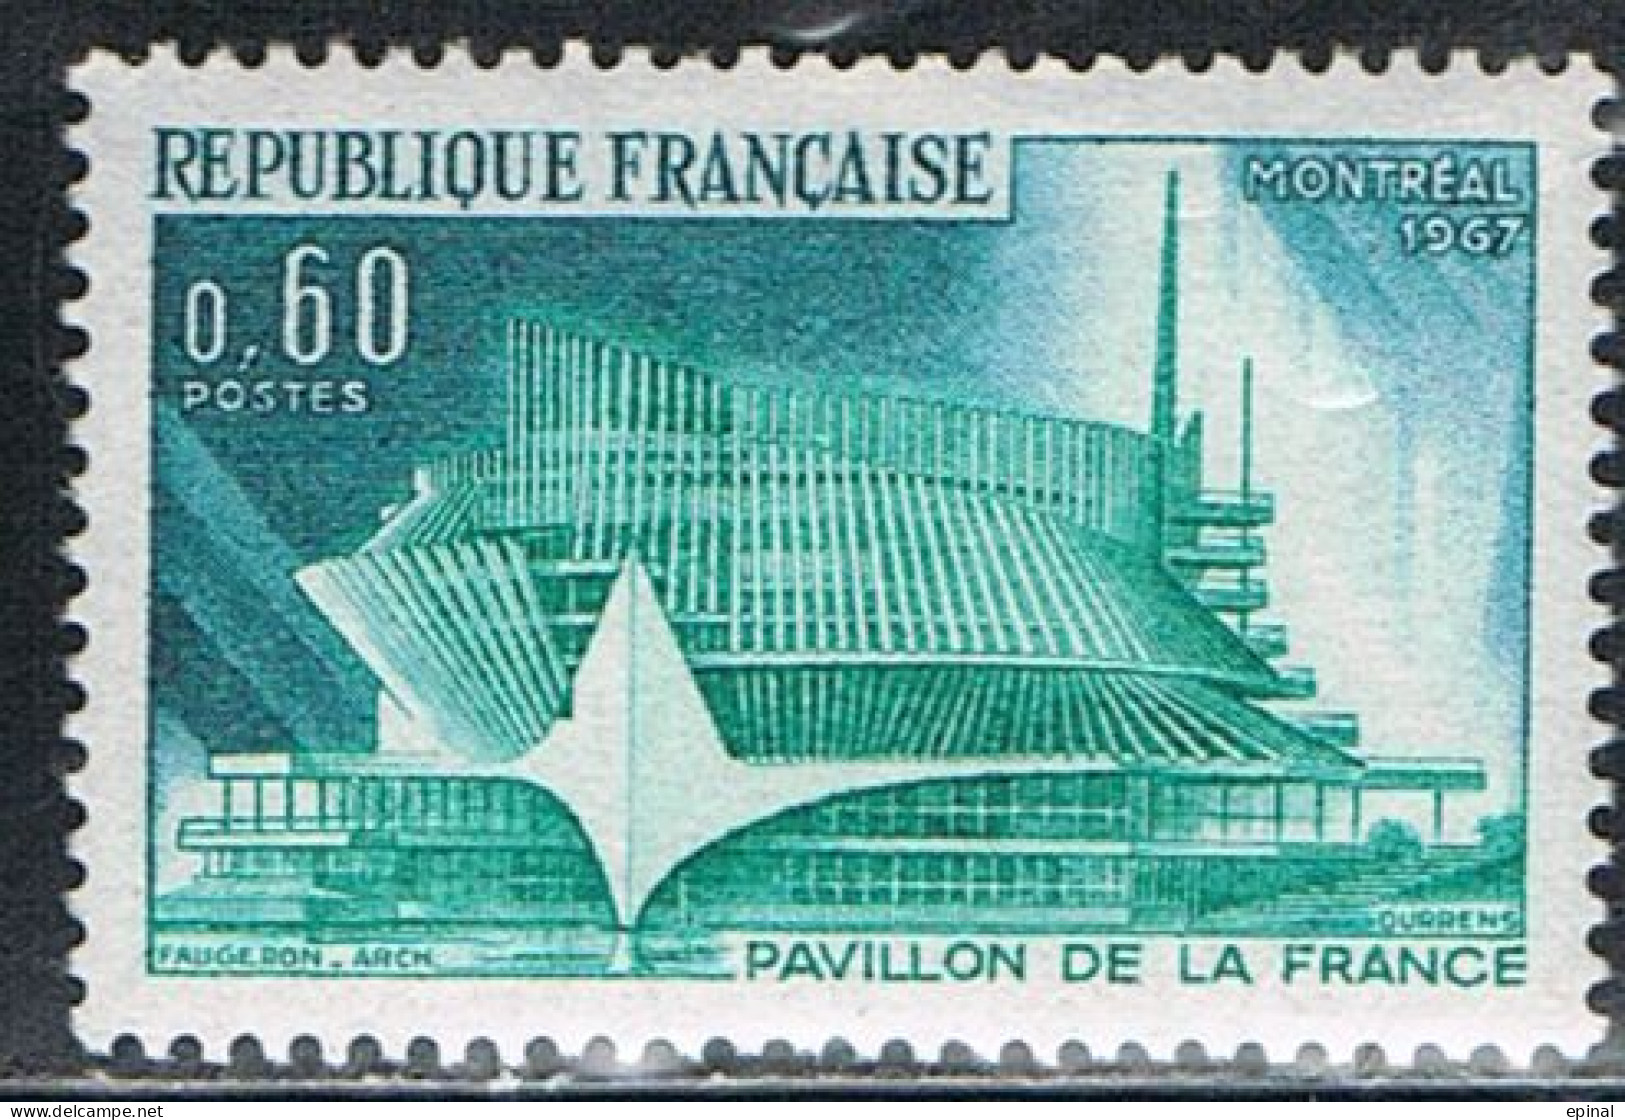 FRANCE : N° 1519 ** (Exposition Internationale De Montréal) - PRIX FIXE - - Unused Stamps